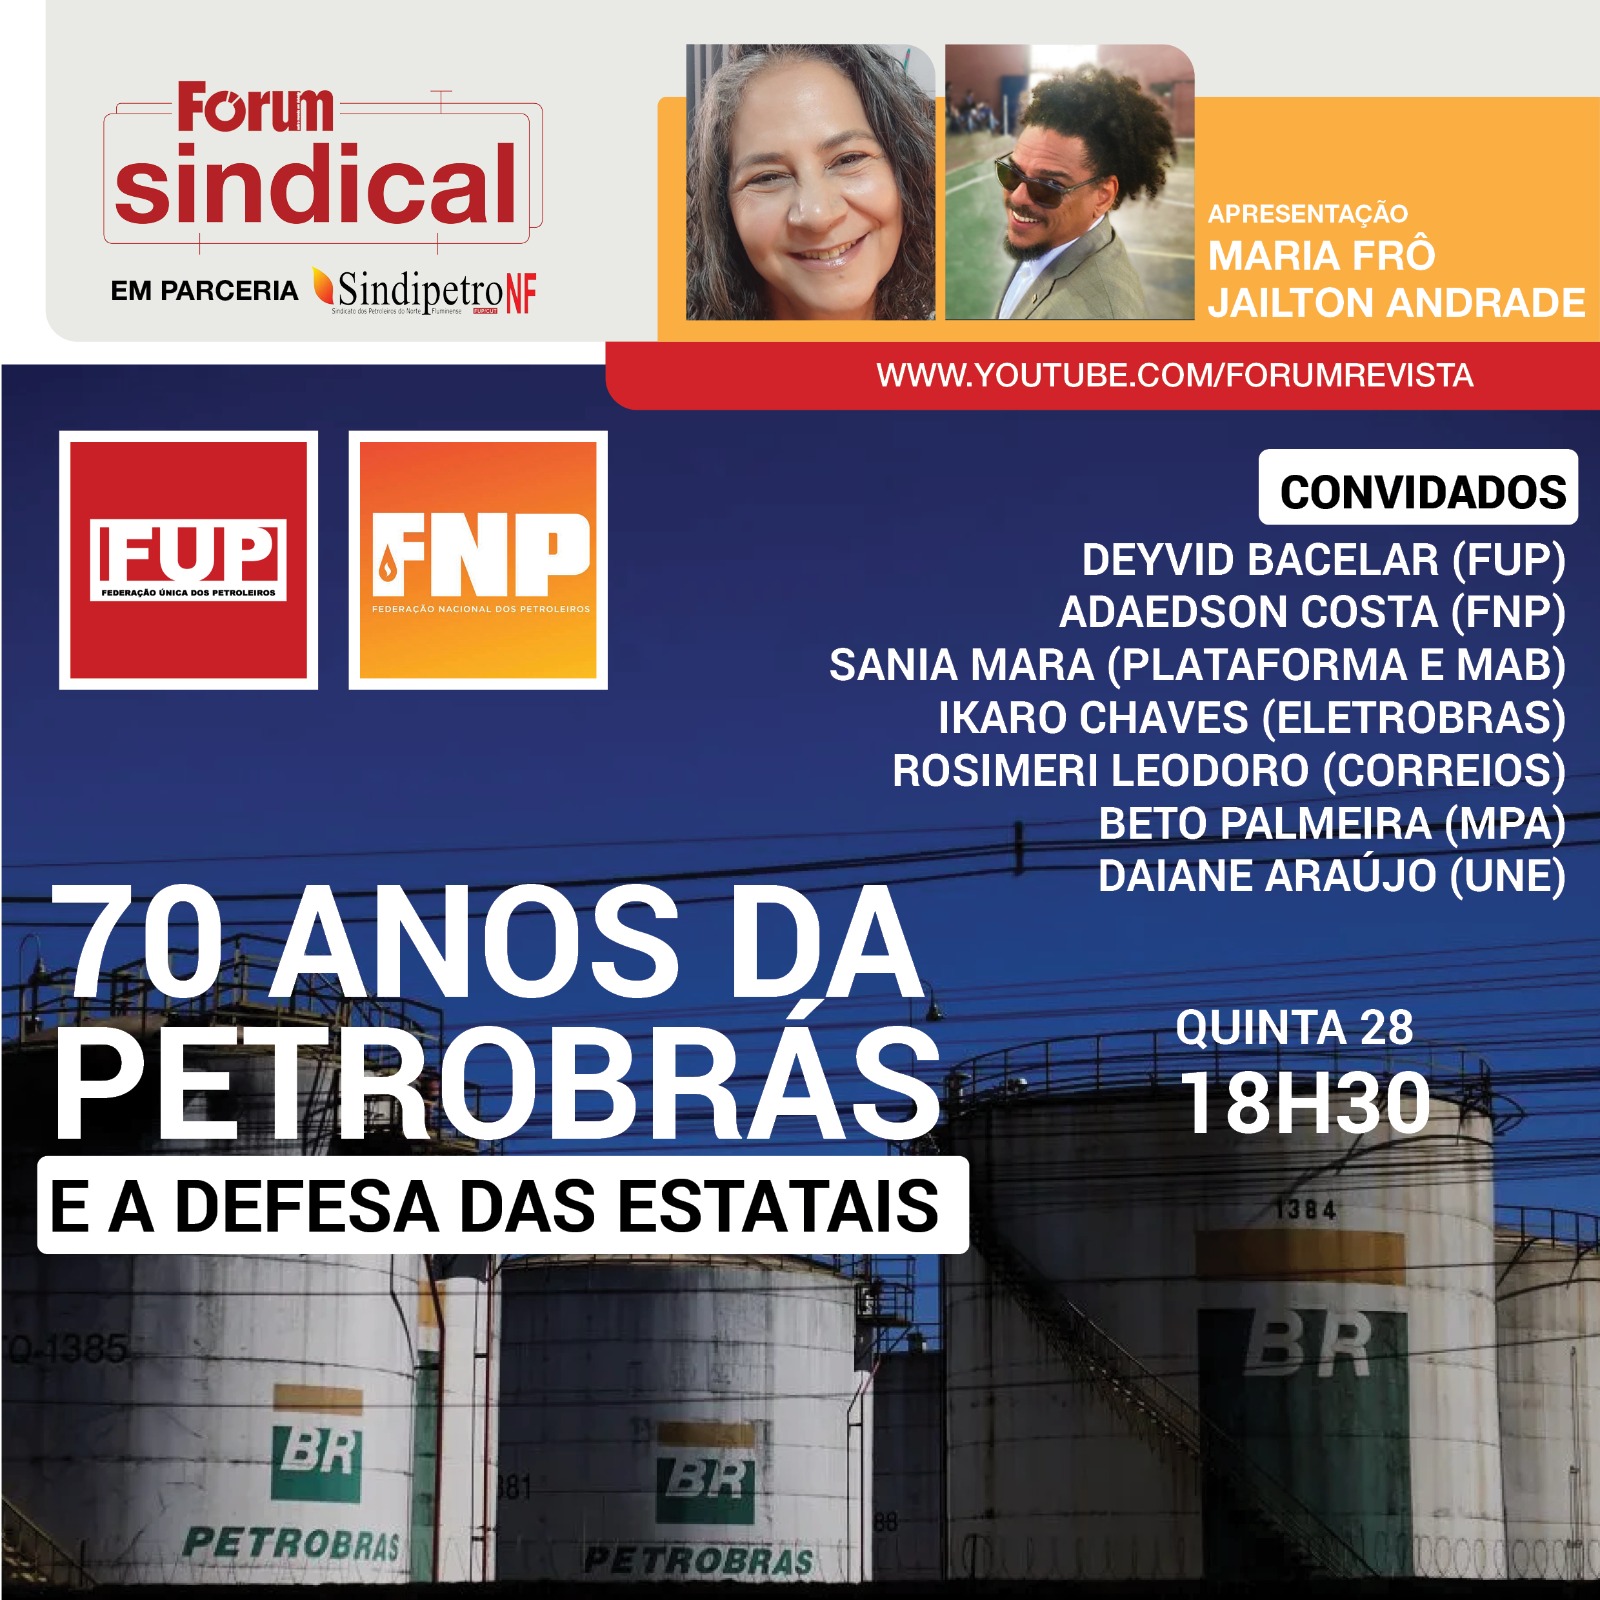 Sindipetro-LP participa de live “70 anos da Petrobrás e a defesa das estatais” promovida pelo Fórum Sindical